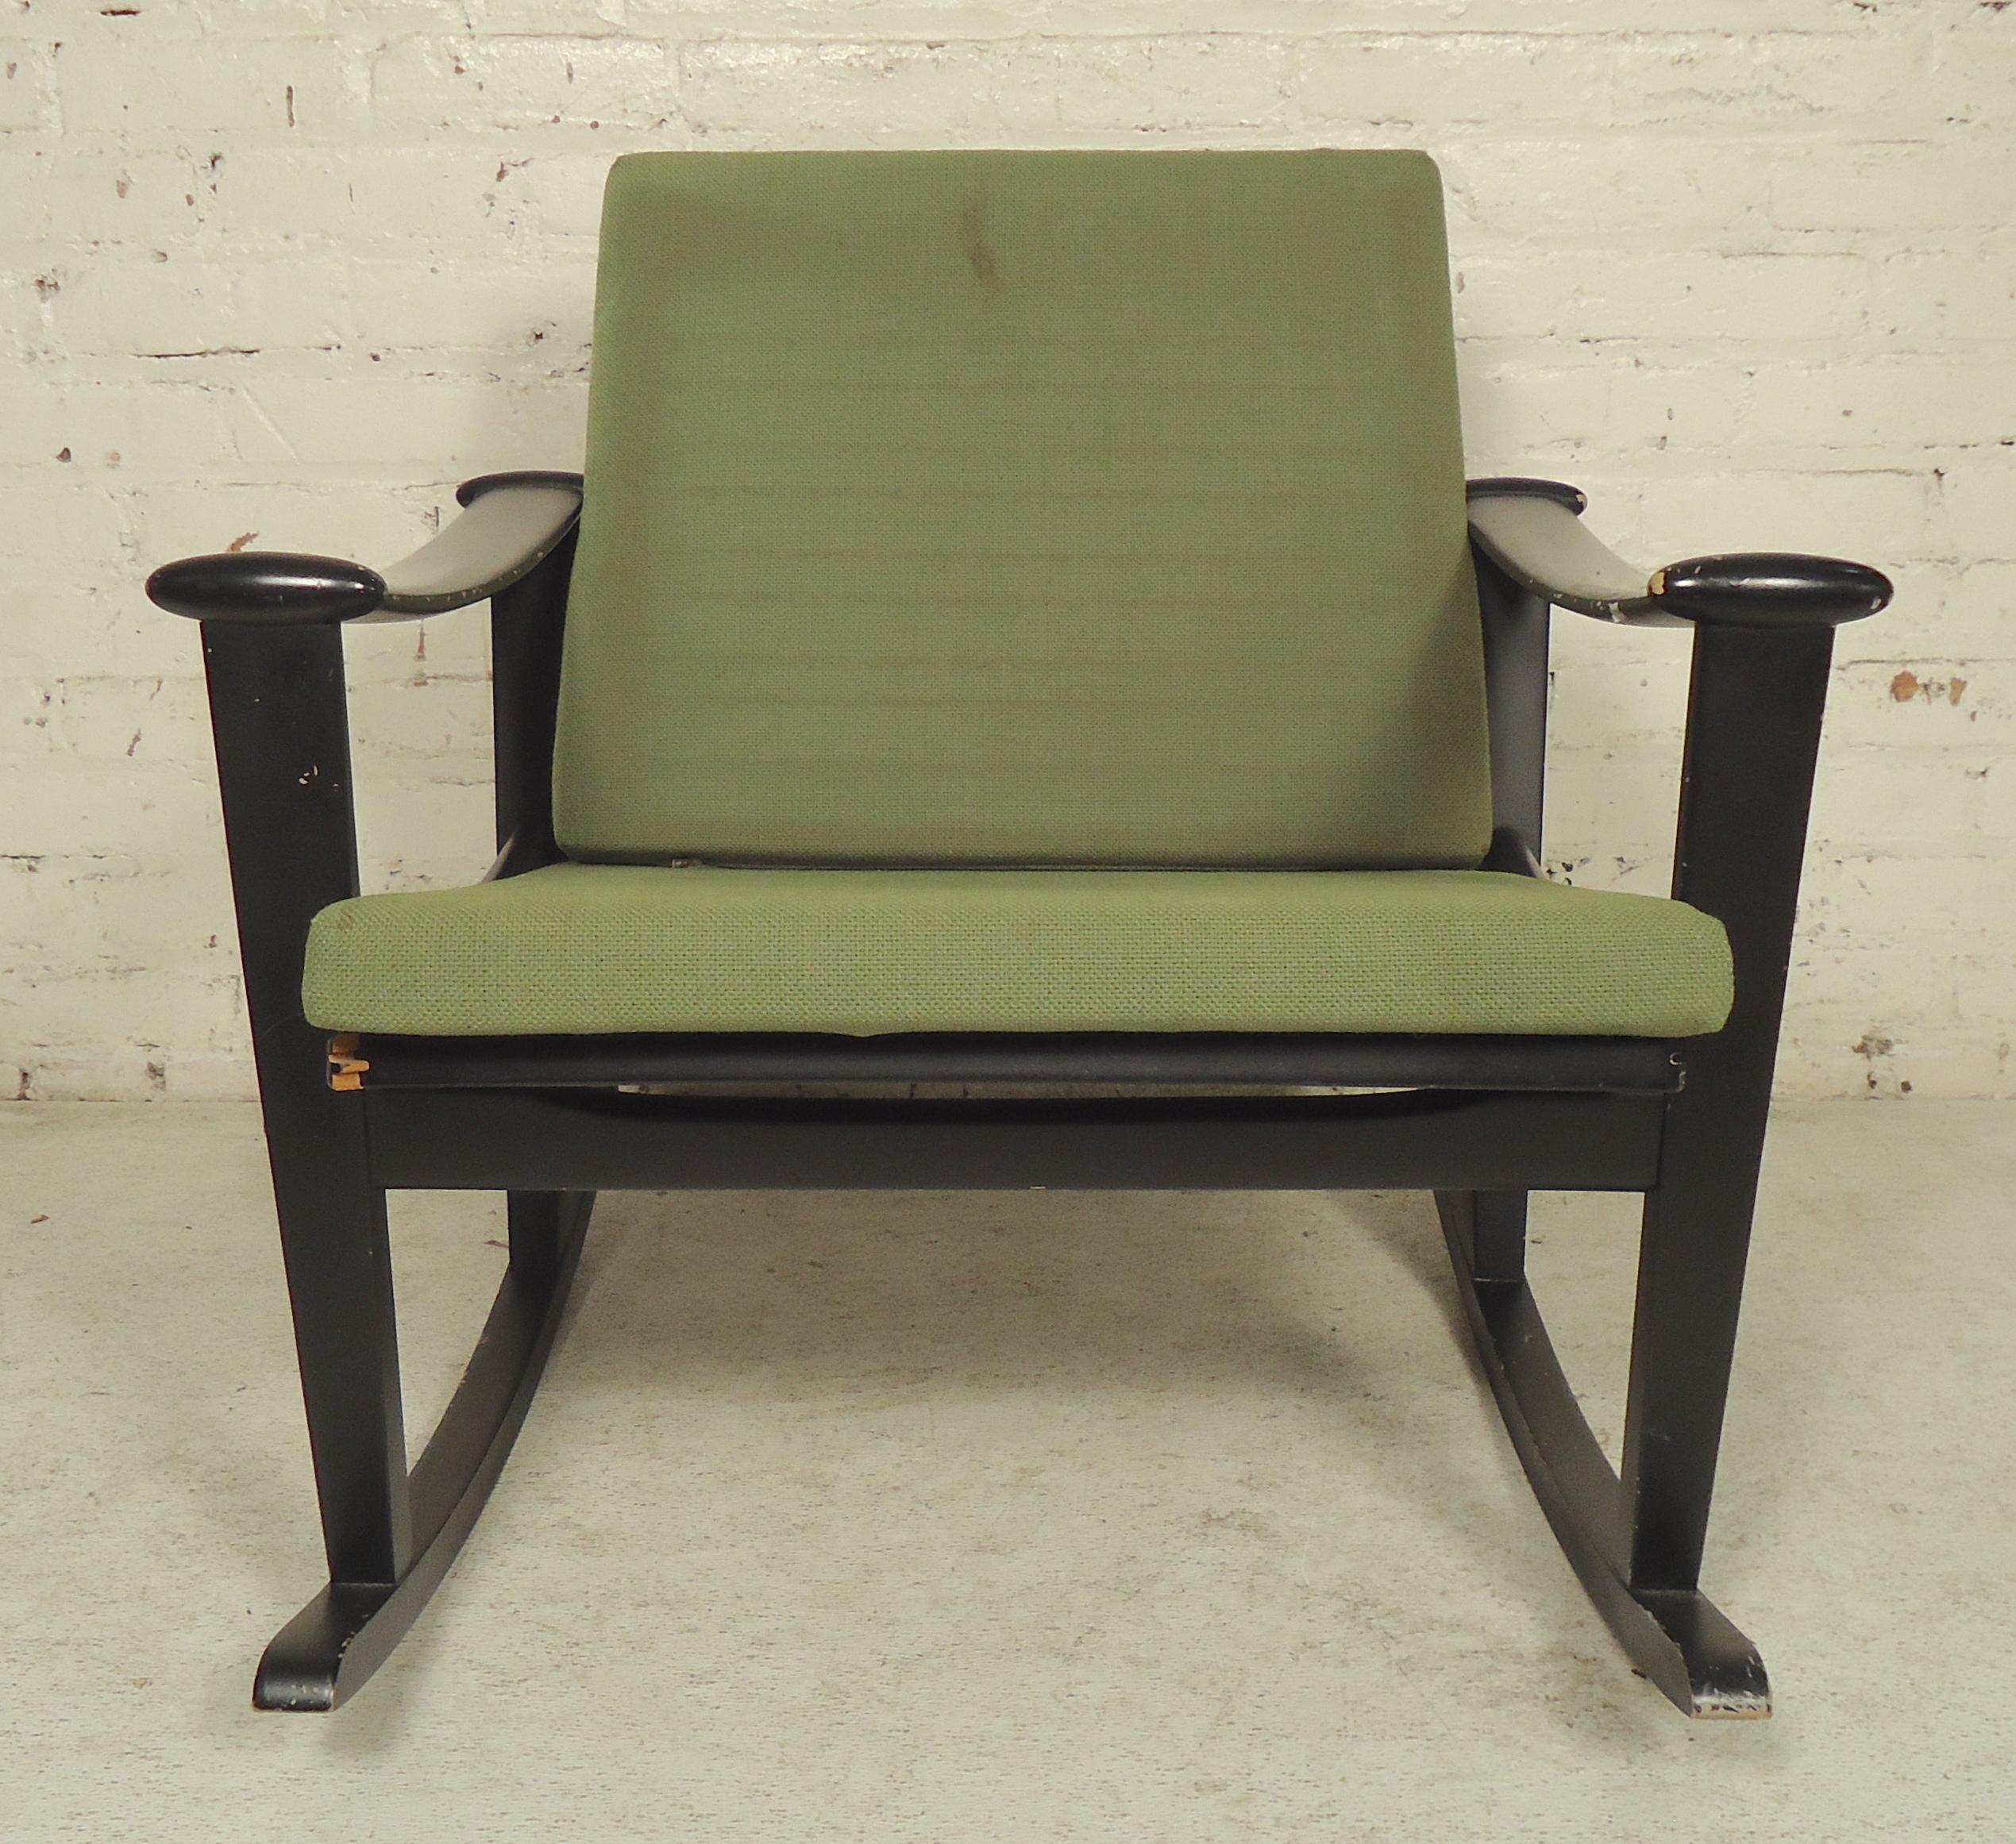 Fauteuil à bascule hollandais vintage du milieu du siècle, conçu par M. Nissen pour Pastoe Furniture. Fortement inspirée de l'emblématique chaise 